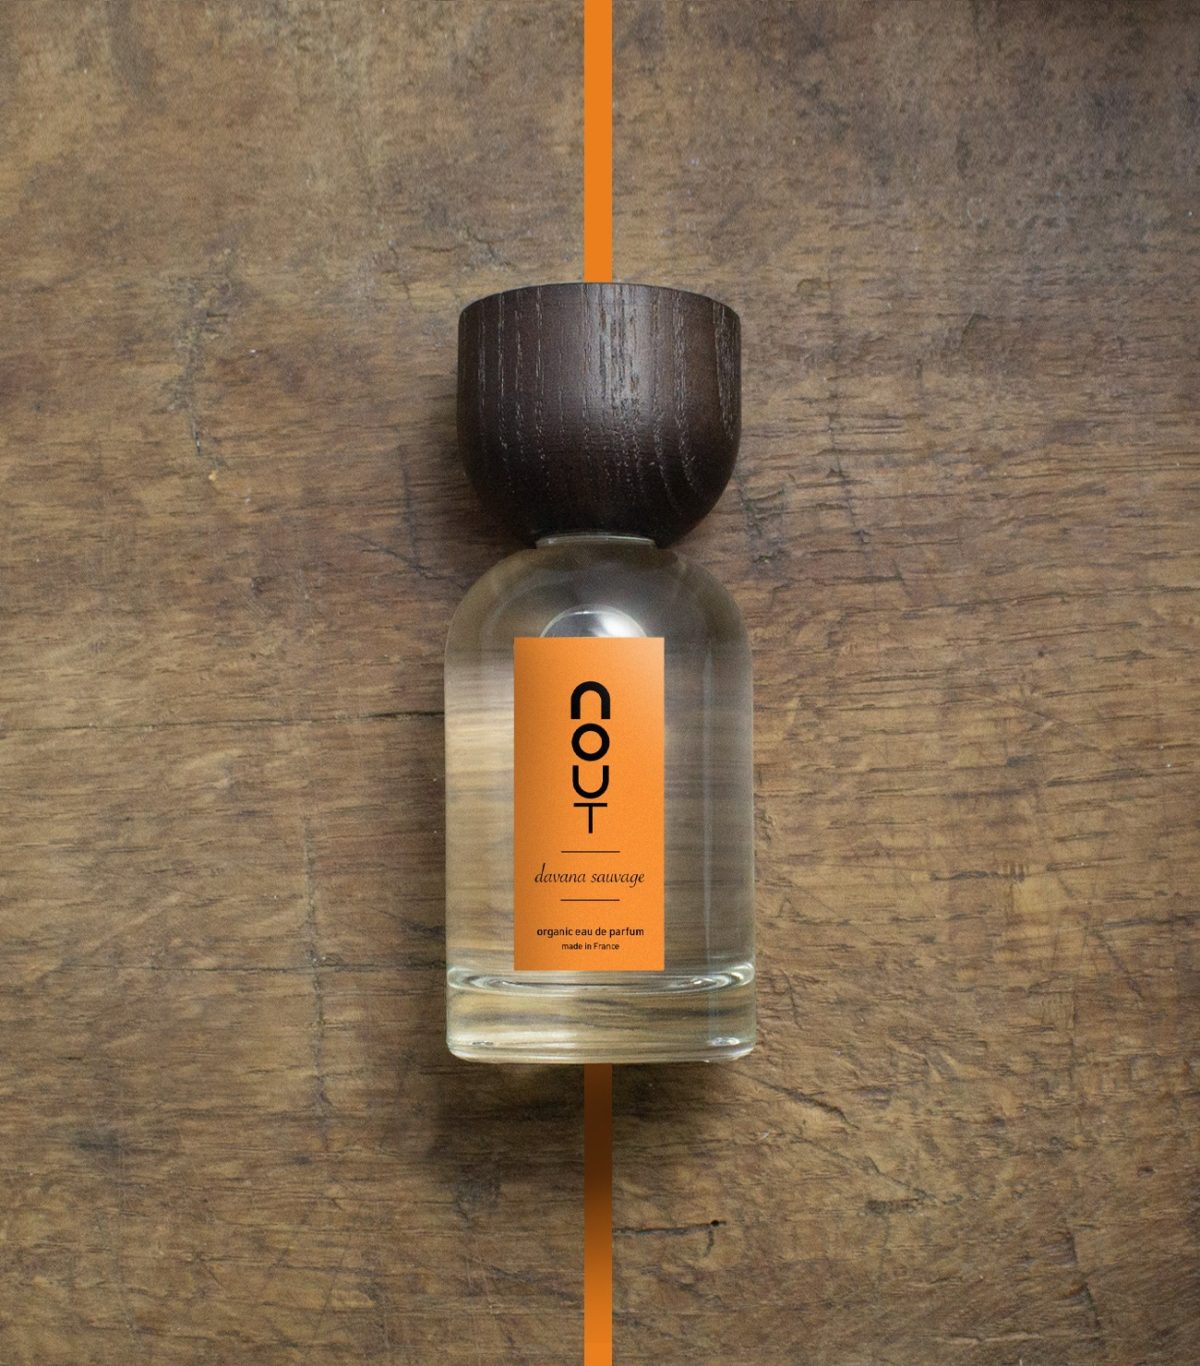 davana sauvage (100ml) - Nout parfum